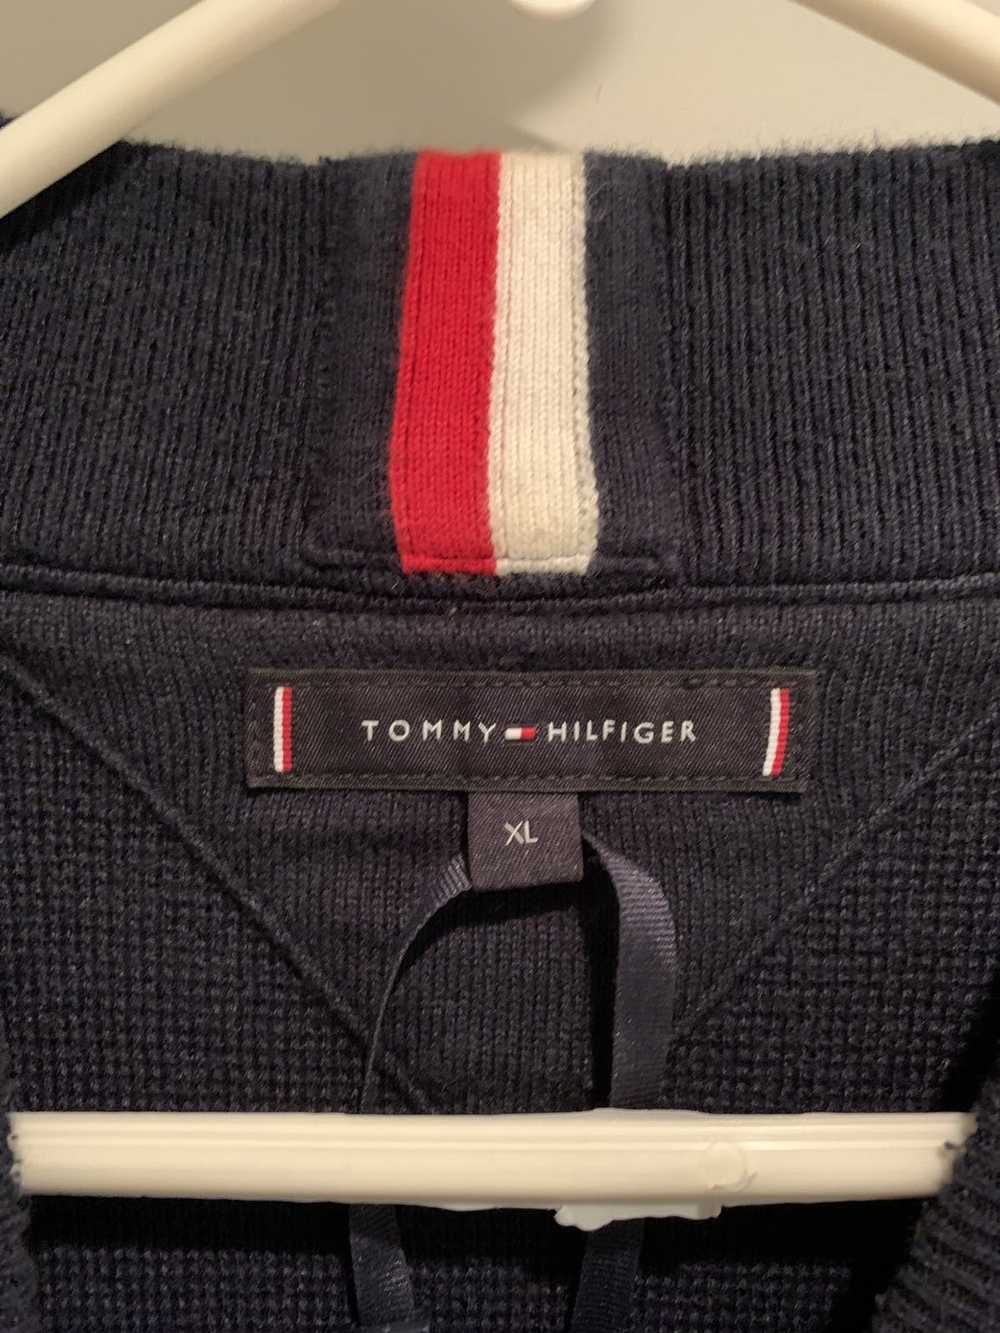 Tommy Hilfiger TOMMY HILFIGER Men’s Sweater / Tur… - image 3